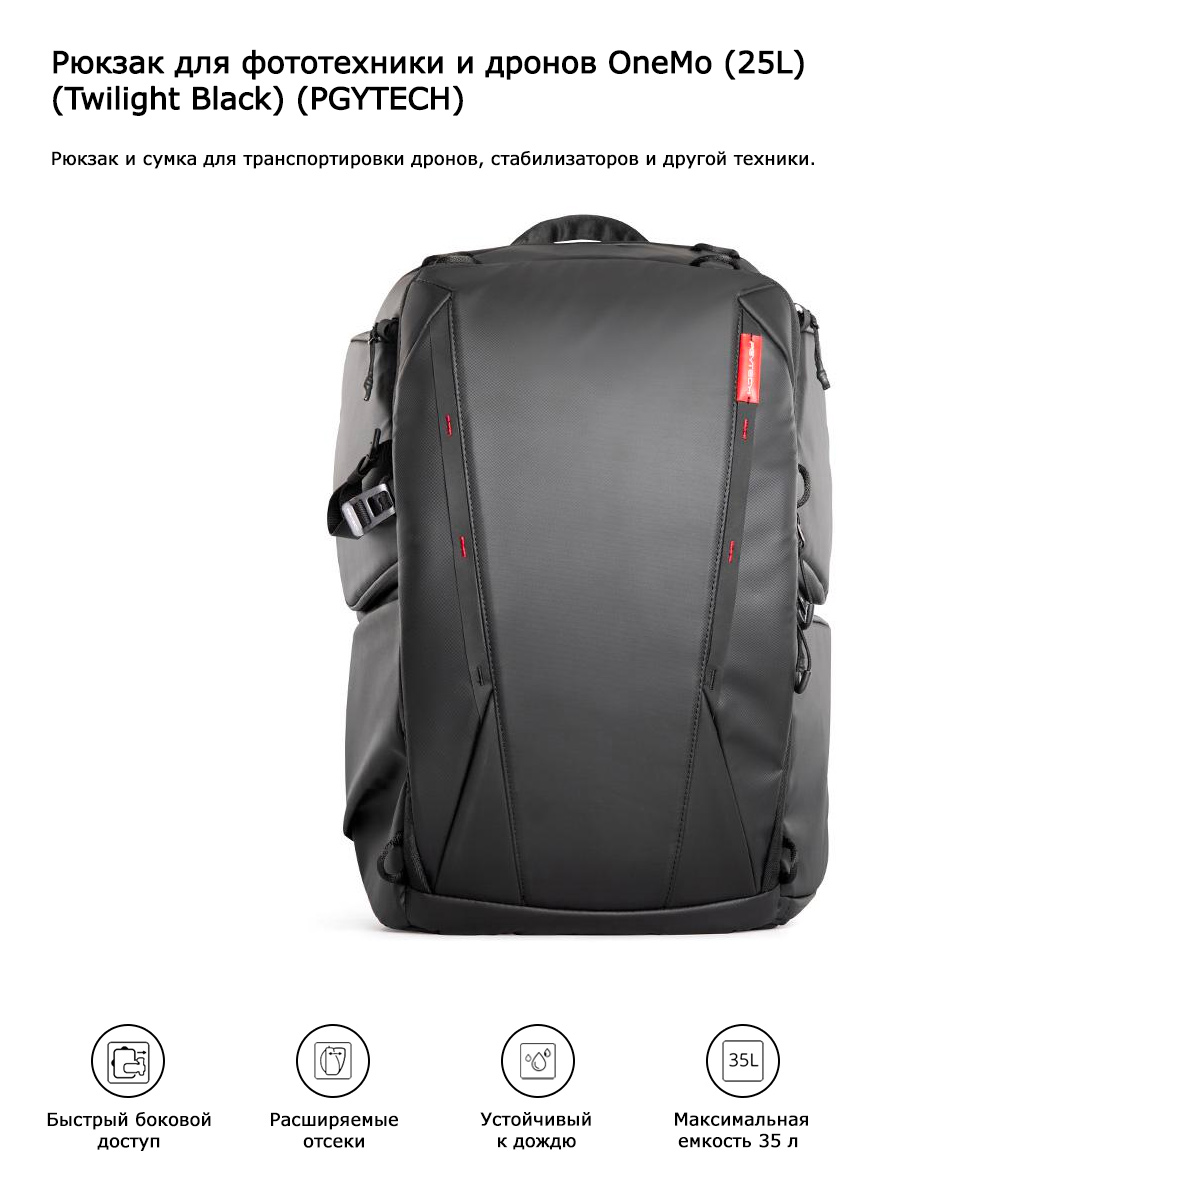 Рюкзак для фототехники и дронов OneMo Backpack 25 литров (Twilight Black) (PGYTECH) (P-CB-020)